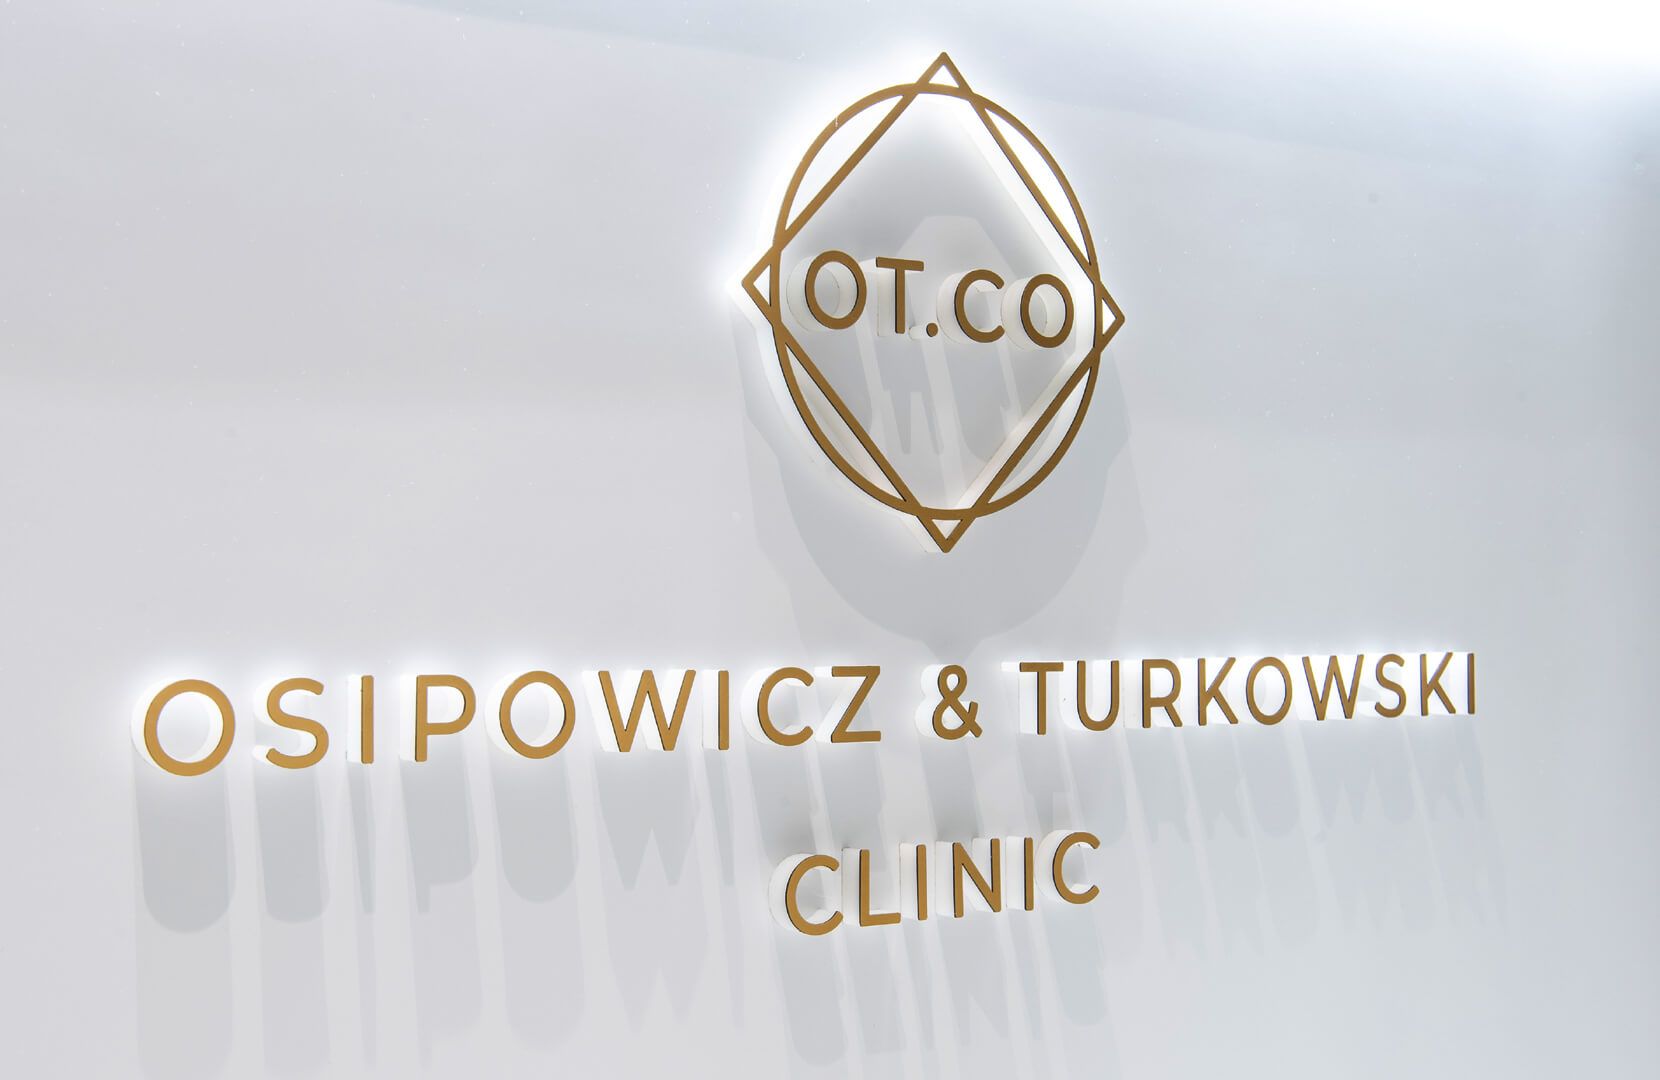 Lettere 3D alla reception della clinica OT.CO - Lettere tridimensionali in oro con logo alla reception della clinica OT.CO